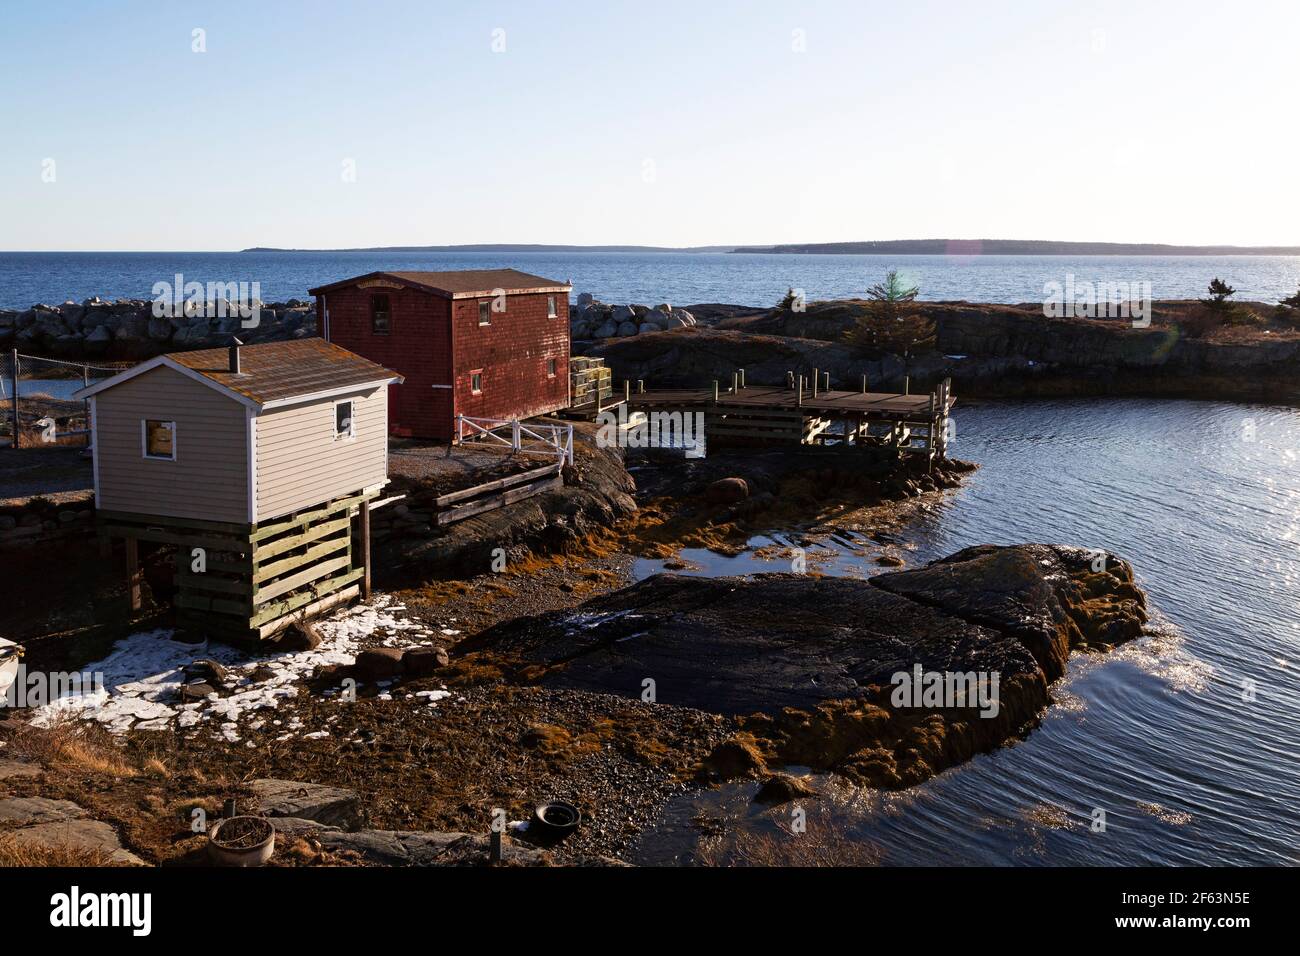 Des cabanes au bord de la côte à Blue Rocks, en Nouvelle-Écosse, au Canada. Ils donnent sur l'océan Atlantique. Banque D'Images